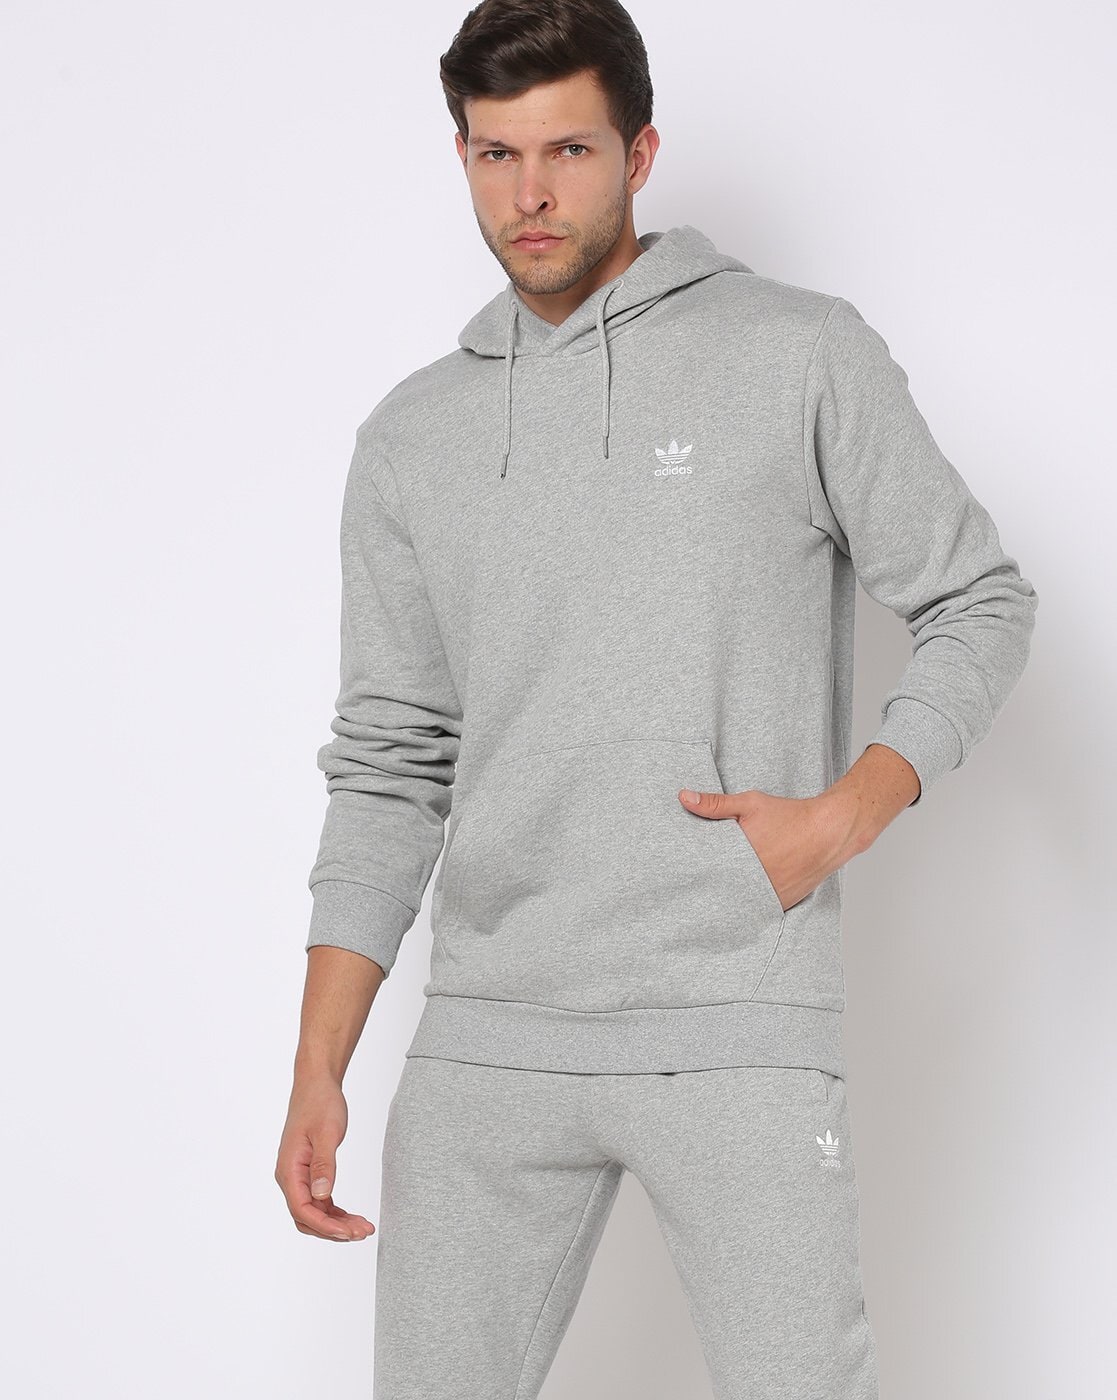 Buy Grey Sweatshirt & for Men by Adidas Originals